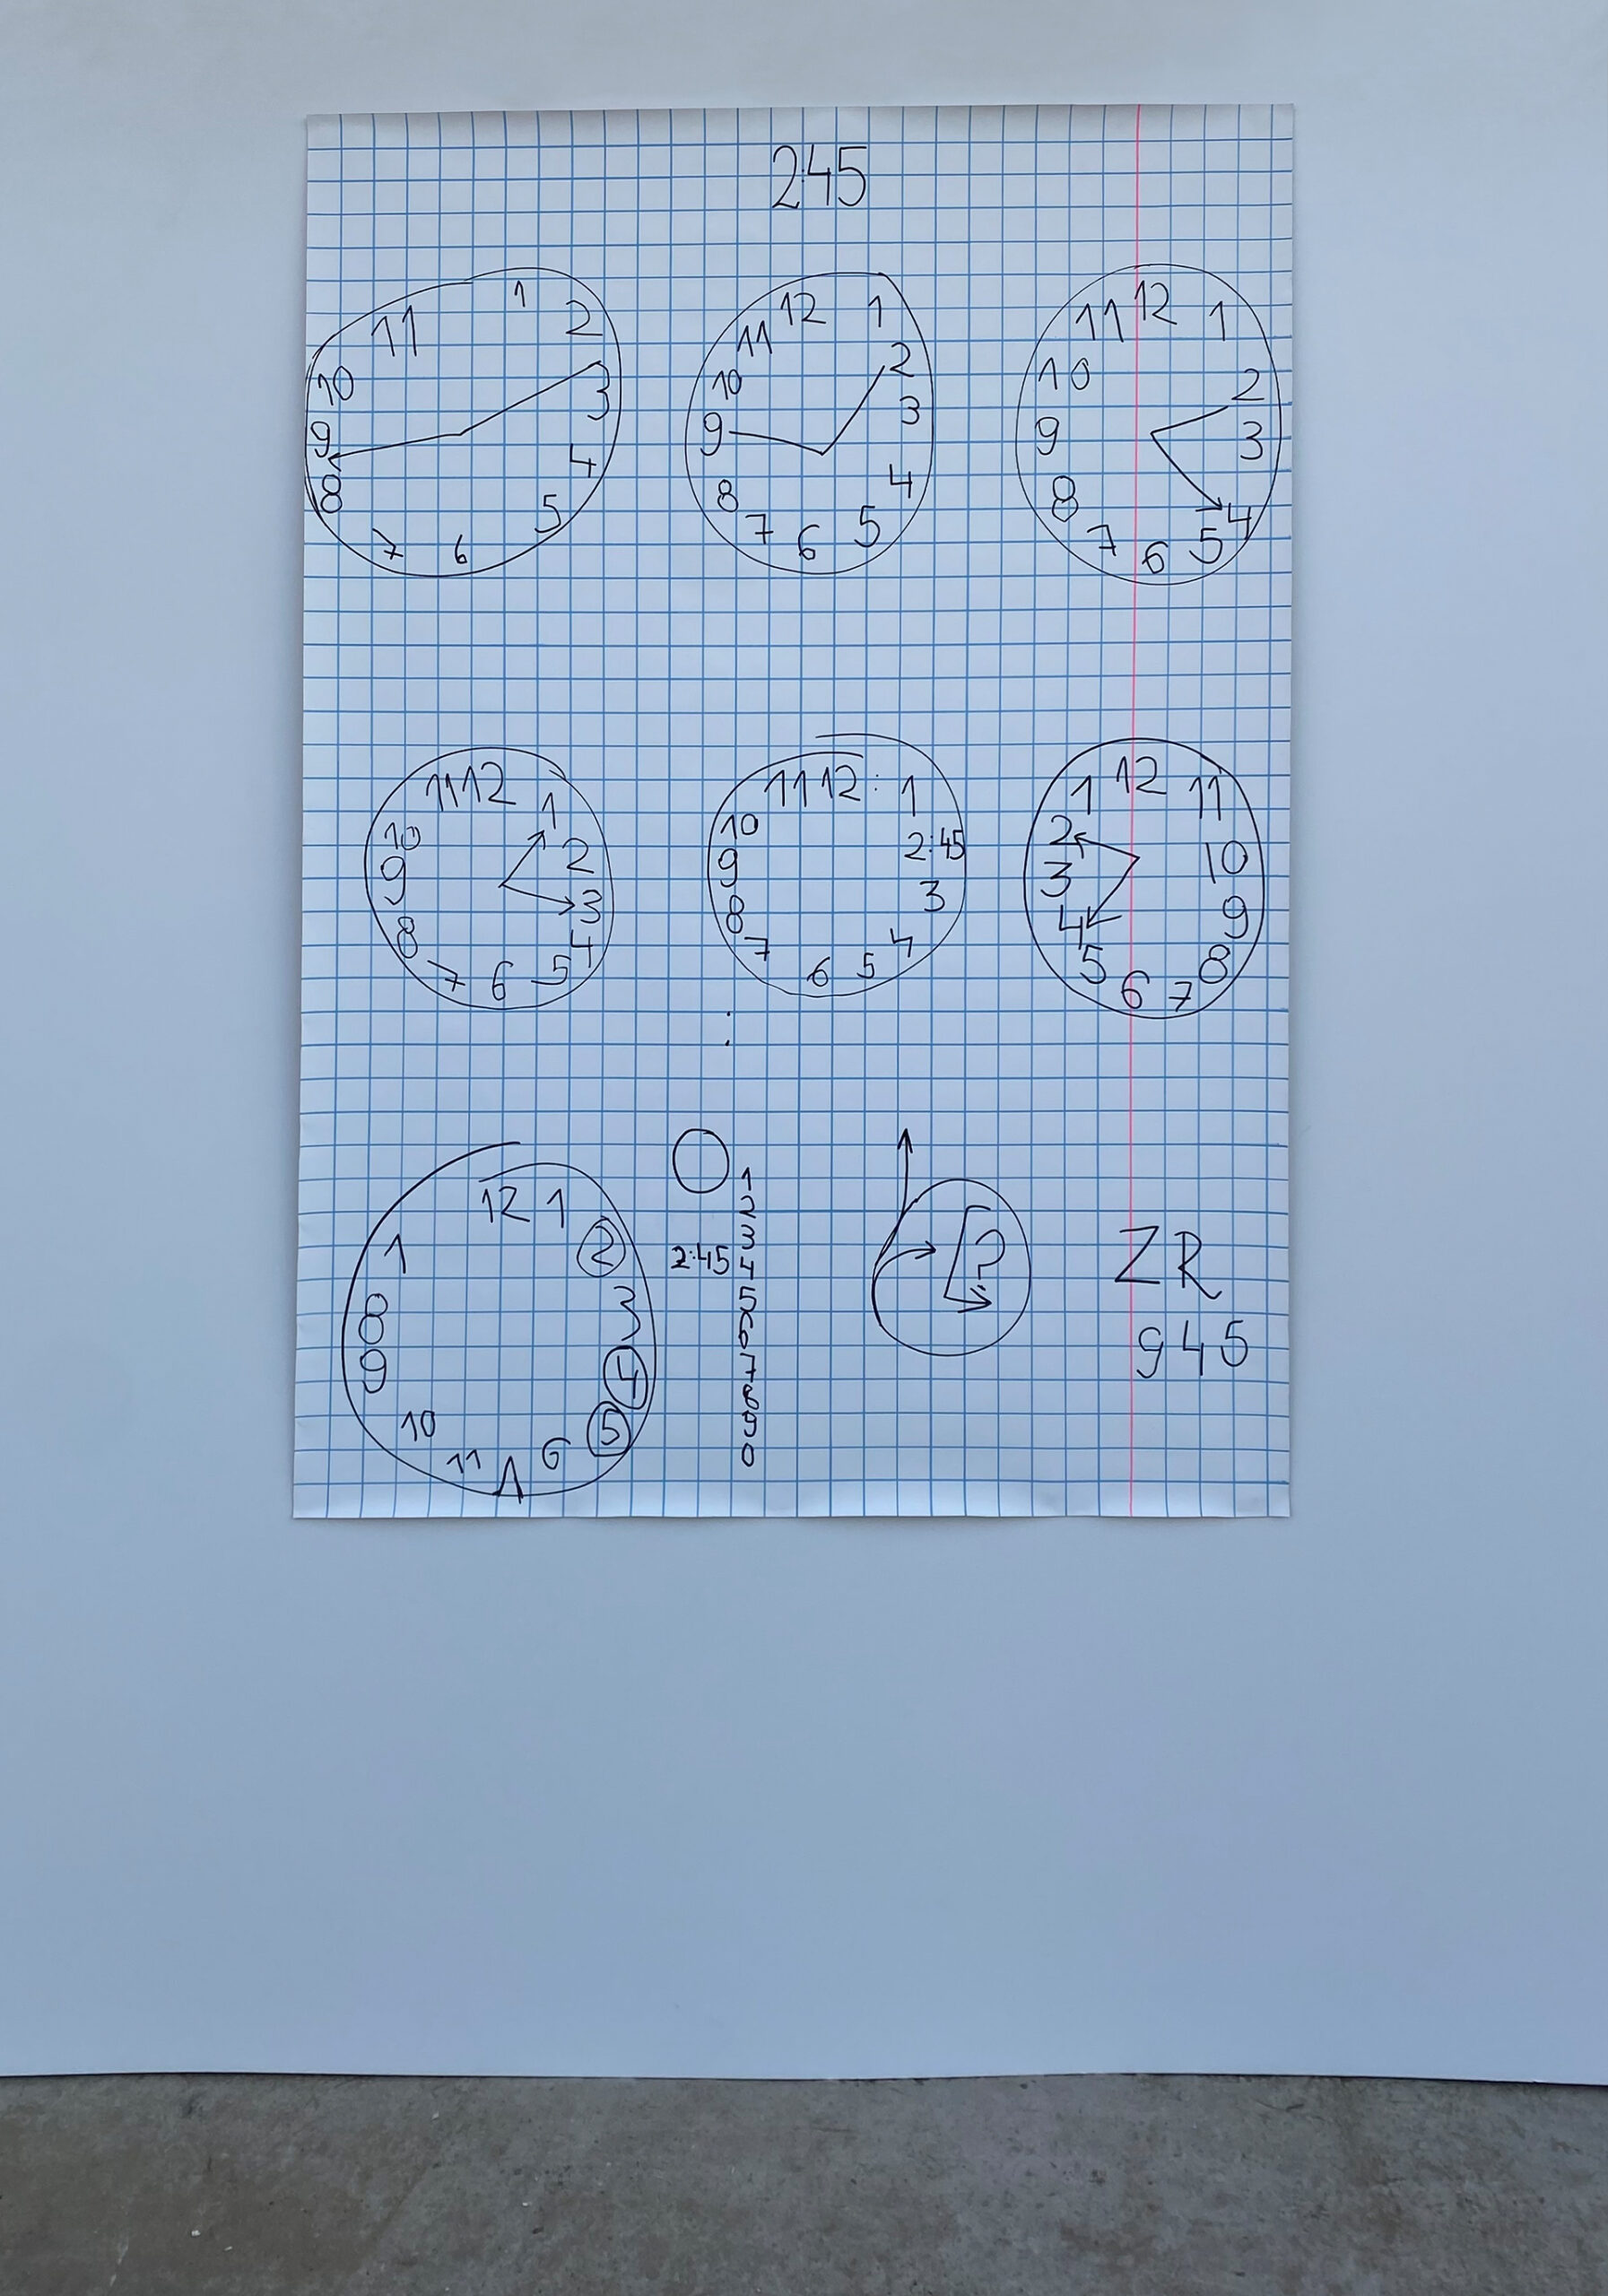 Dokumentacja obrazu imitującego kartkę papieru w kratkę, na której widnieją zegary w przeróżnych rysunkowych formach.